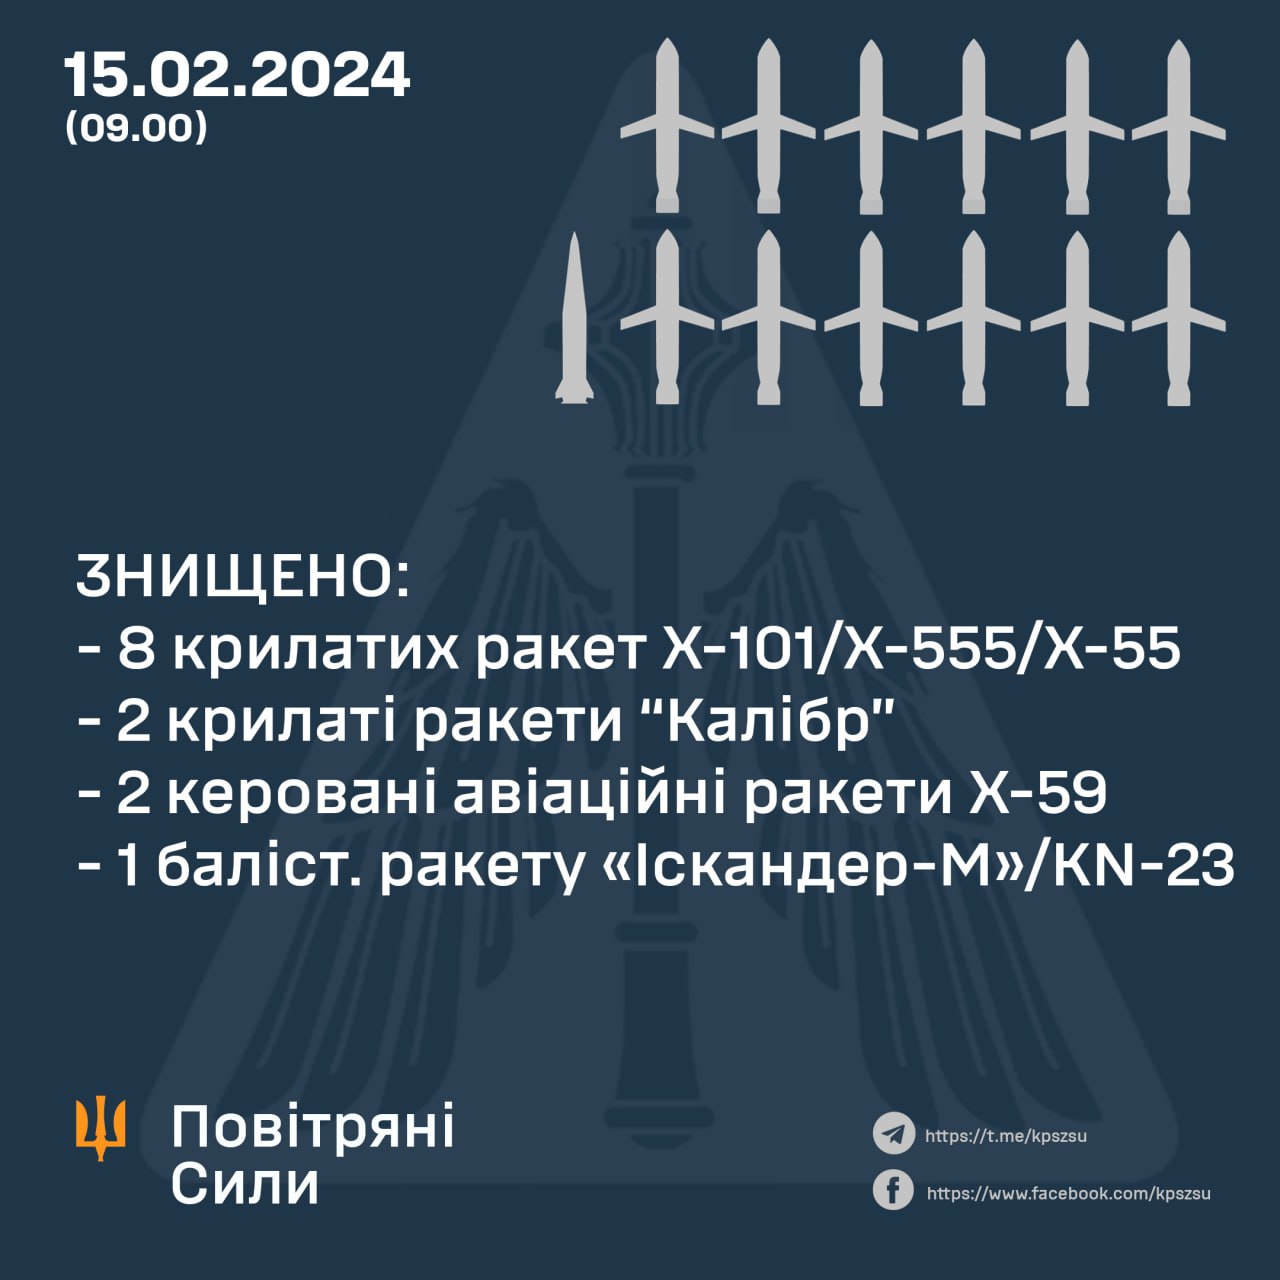 Захисники українського неба під час ранкової атаки рф знищили 13 з 26 ракет